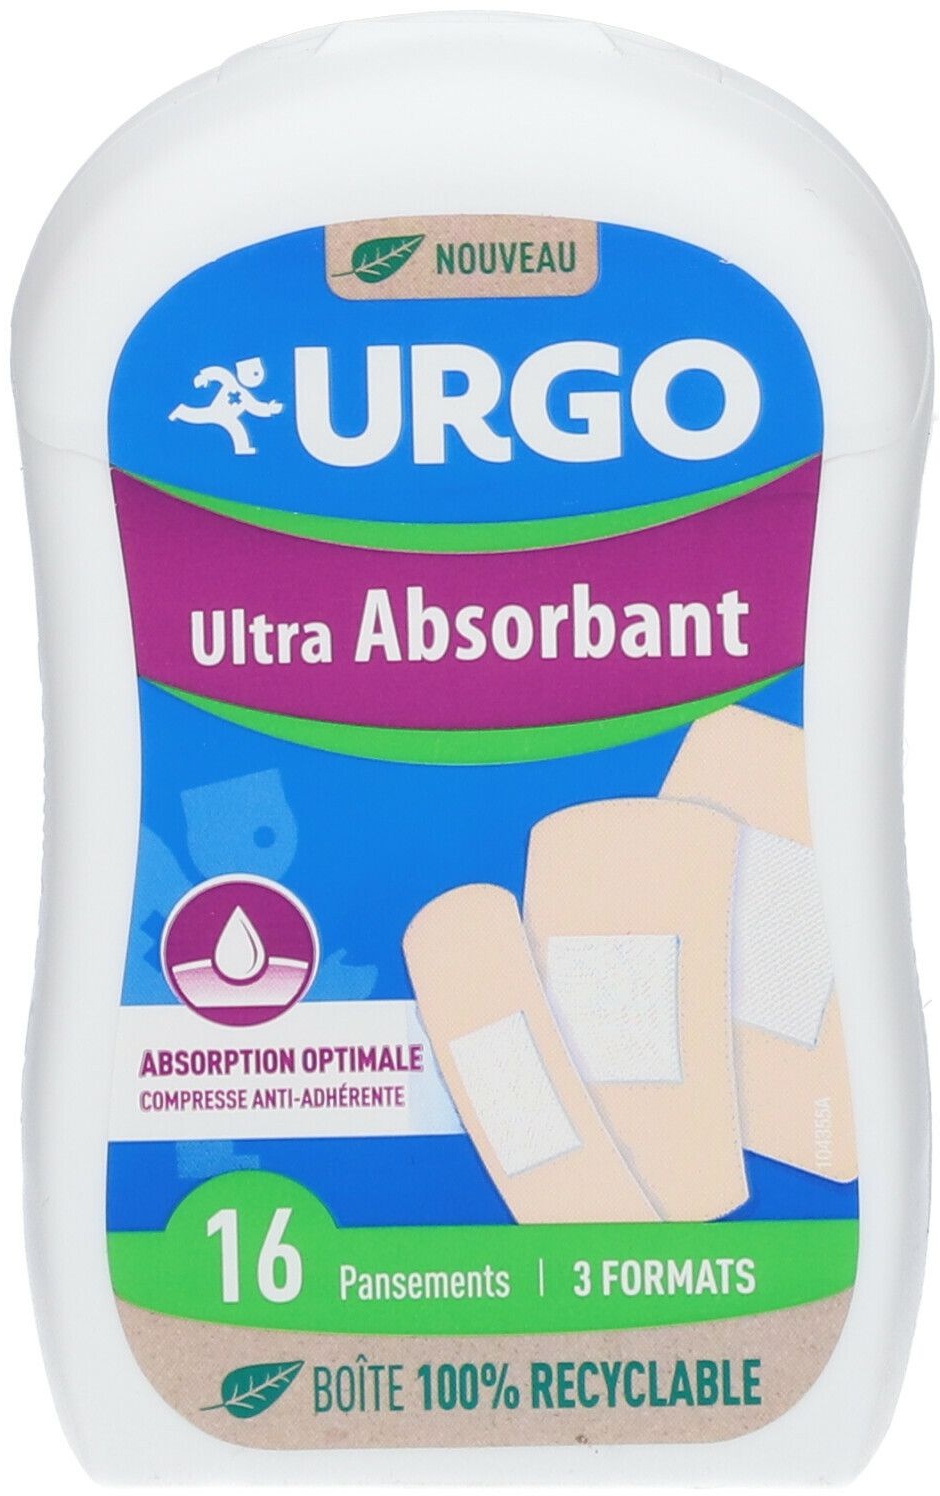 URGO Ultra-Absorbant Pansement 16 pc(s) pansement(s)